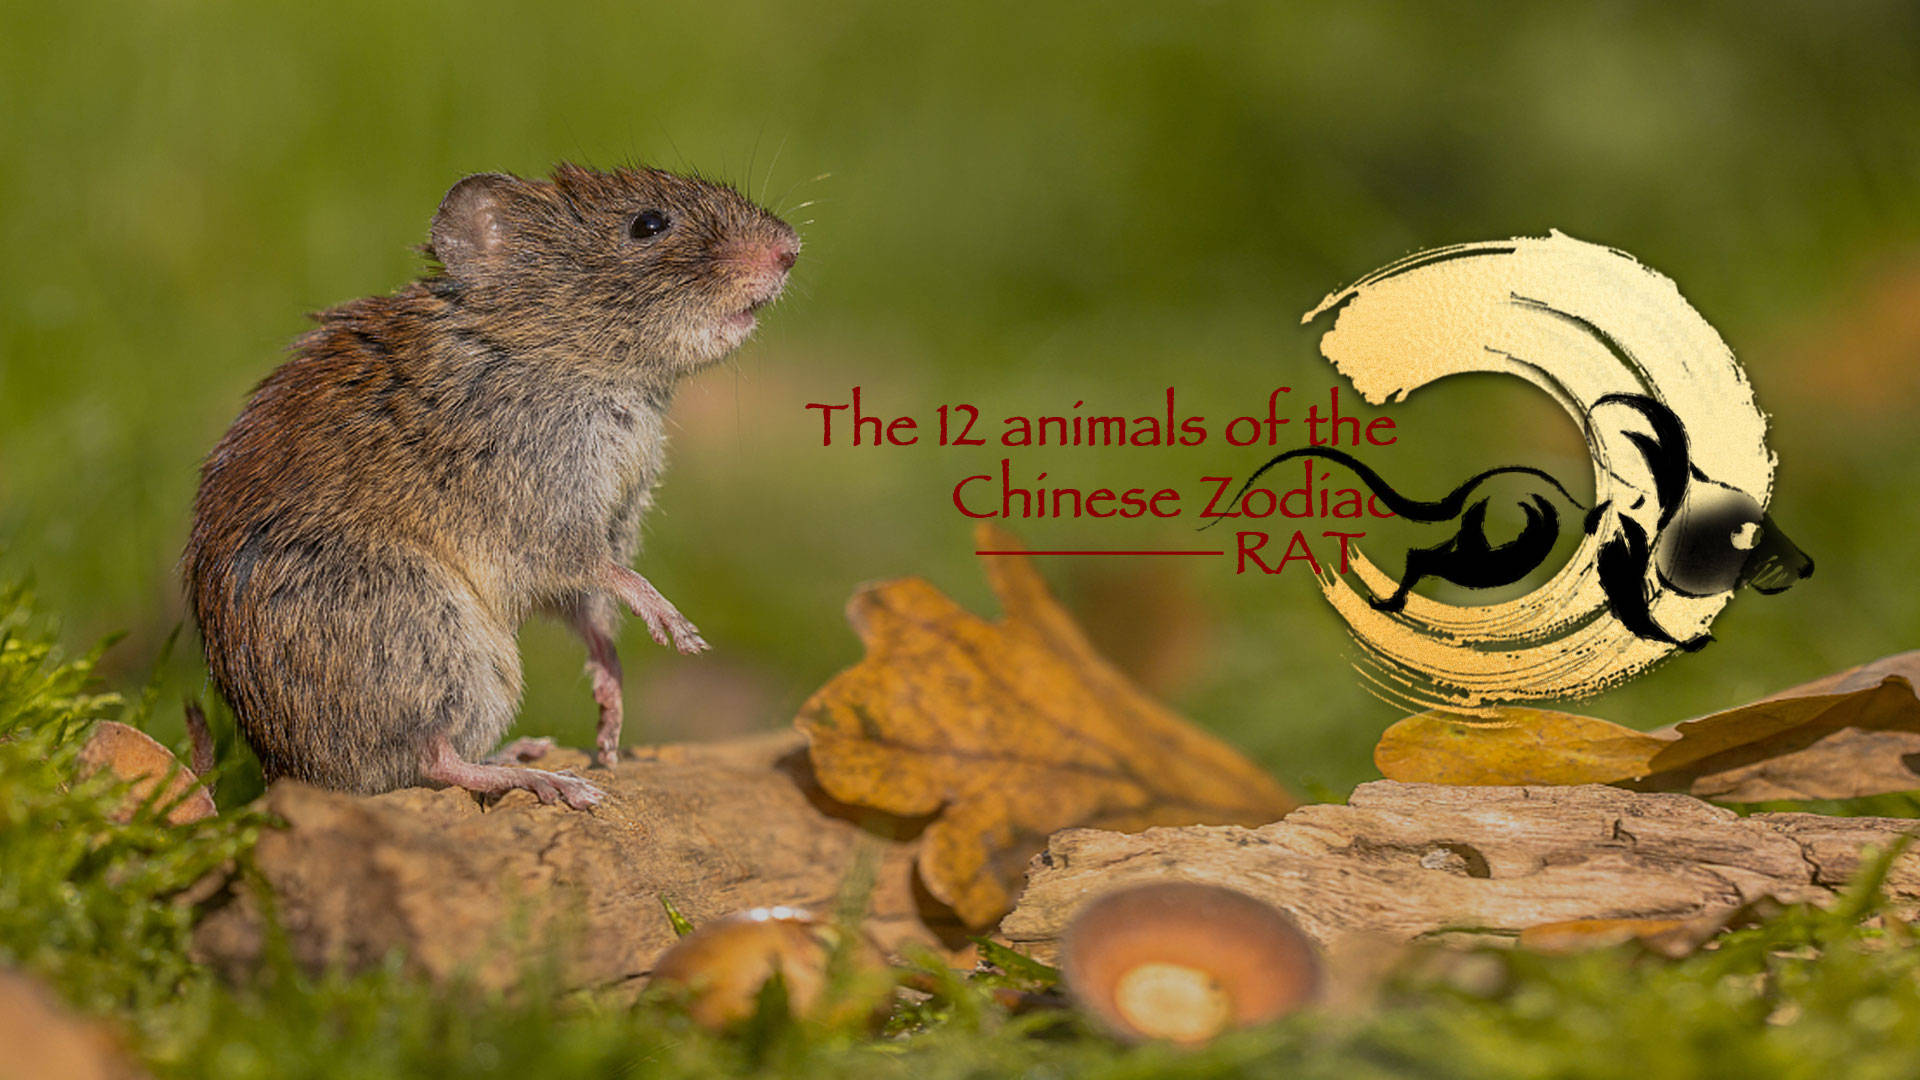 12djuren I Den Kinesiska Zodiaken - Råttan Wallpaper